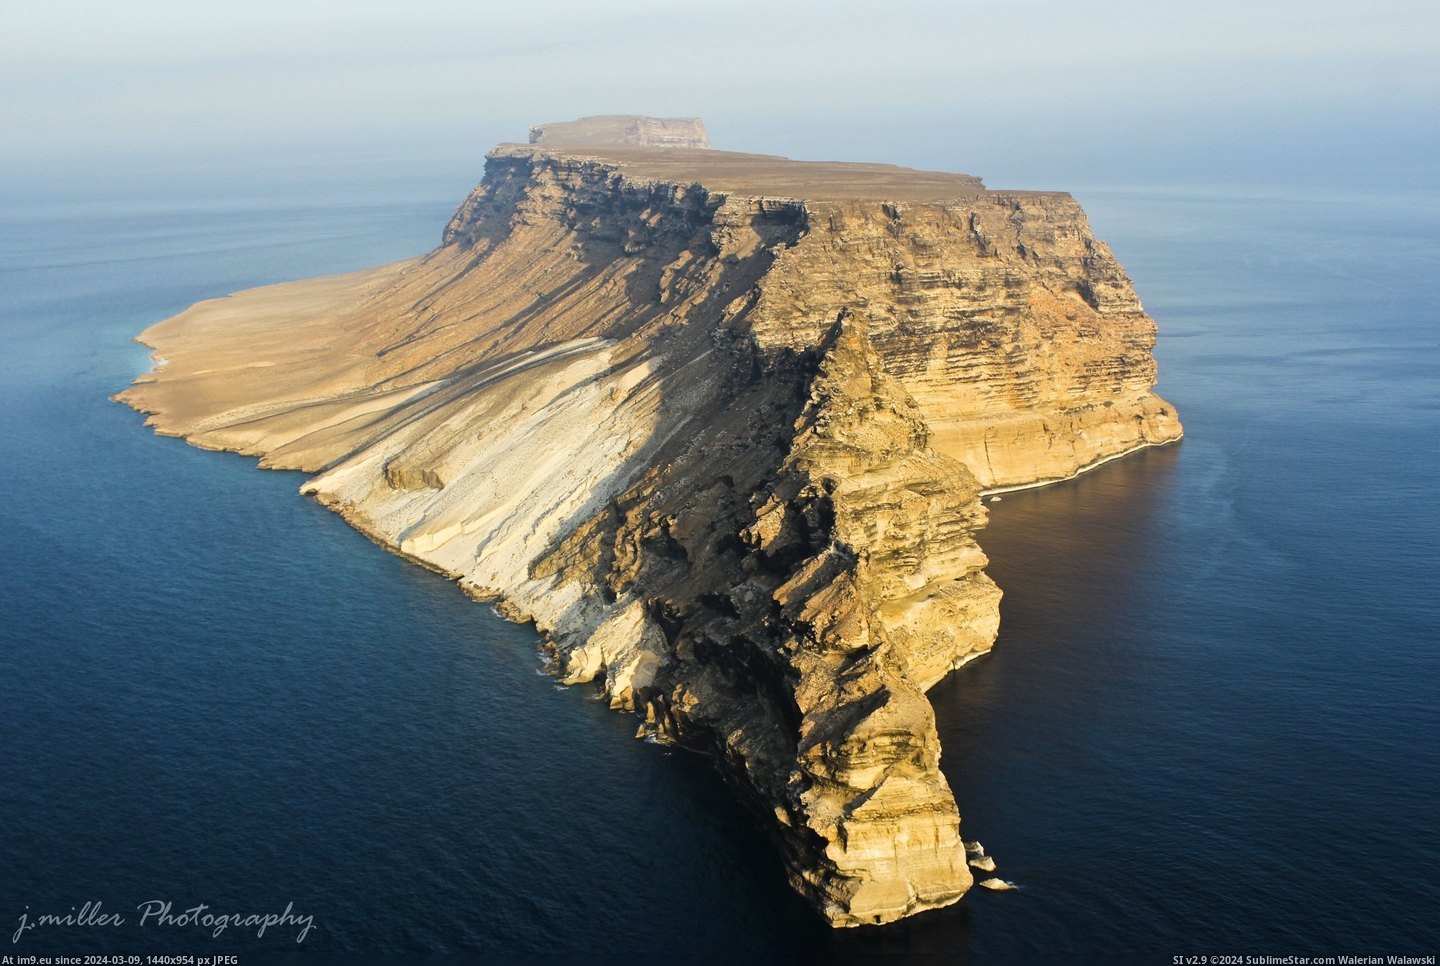 #Island #Public #Yemen #Darsa #Aerial #Photograph [Earthporn] Darsa Island, Yemen. Only known public aerial photograph of this island. [OC][2,073 × 3,110] Pic. (Obraz z album My r/EARTHPORN favs))